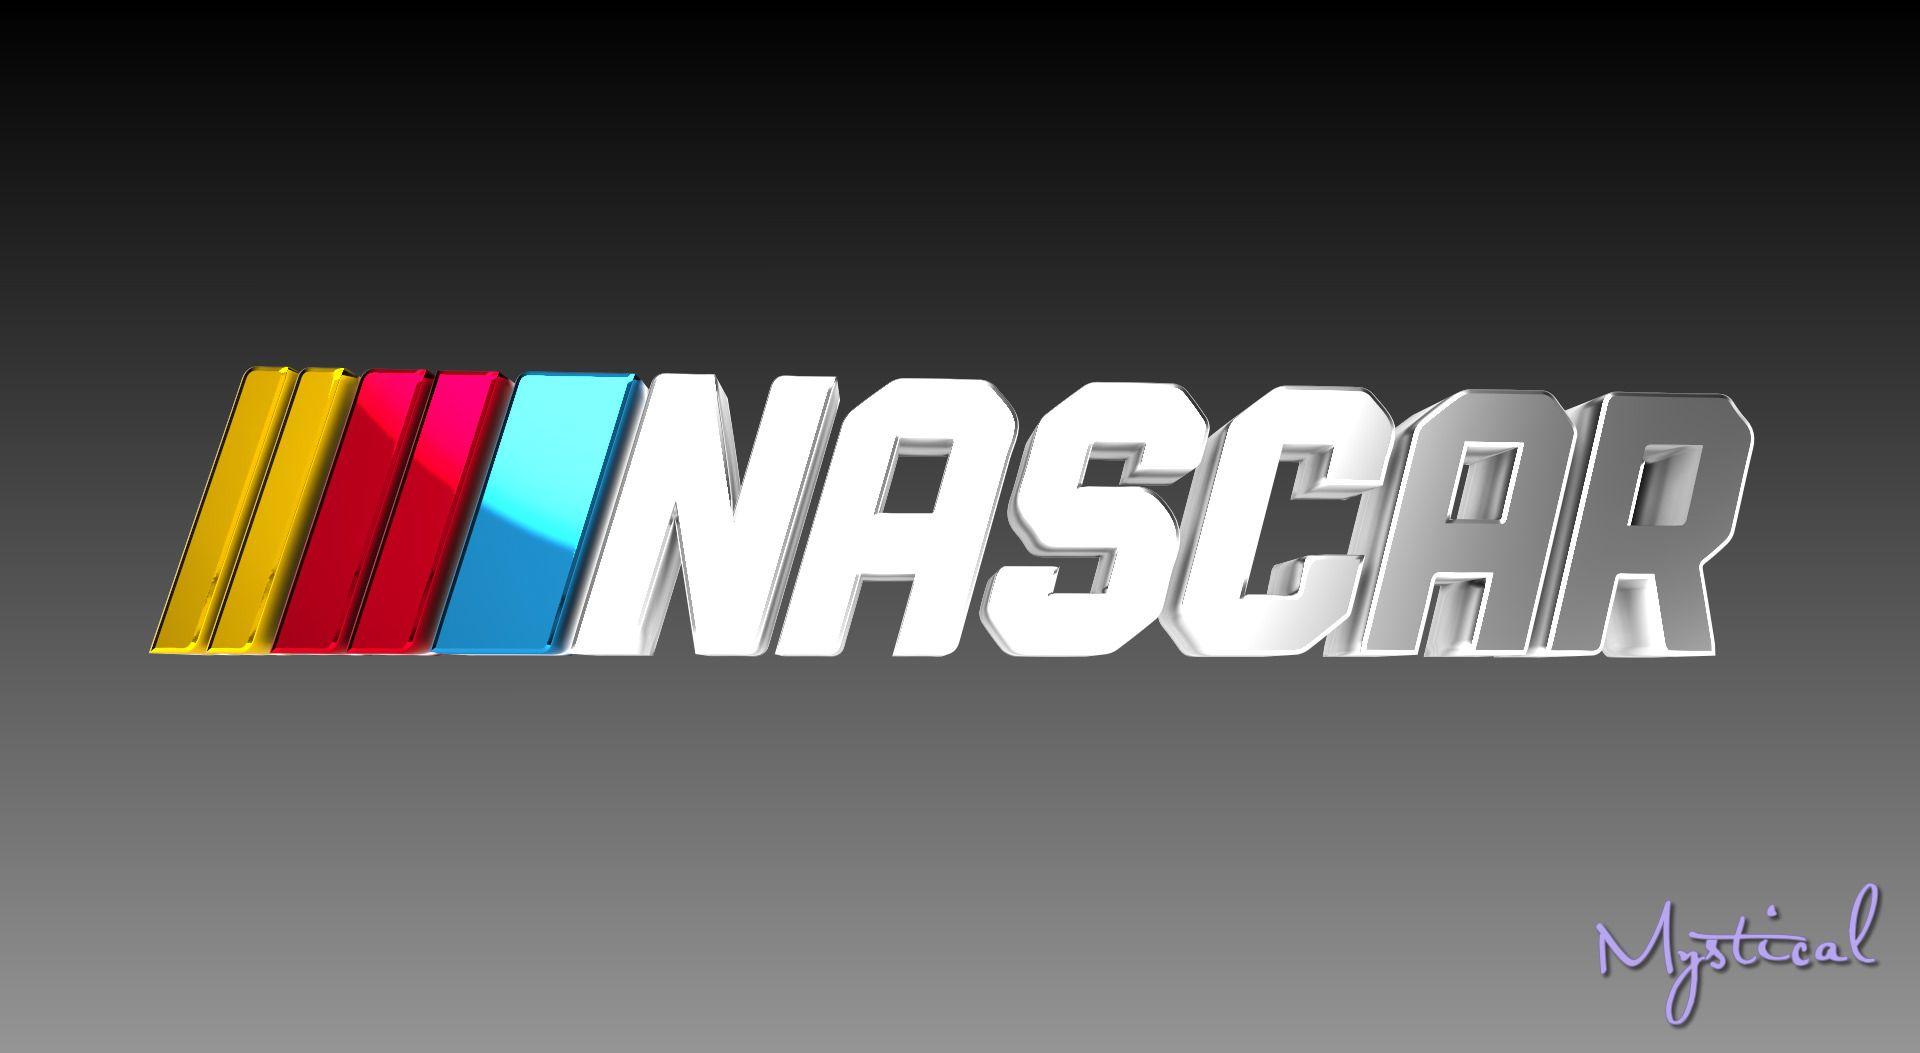 NASCAR Logo - 3D Nascar Logo